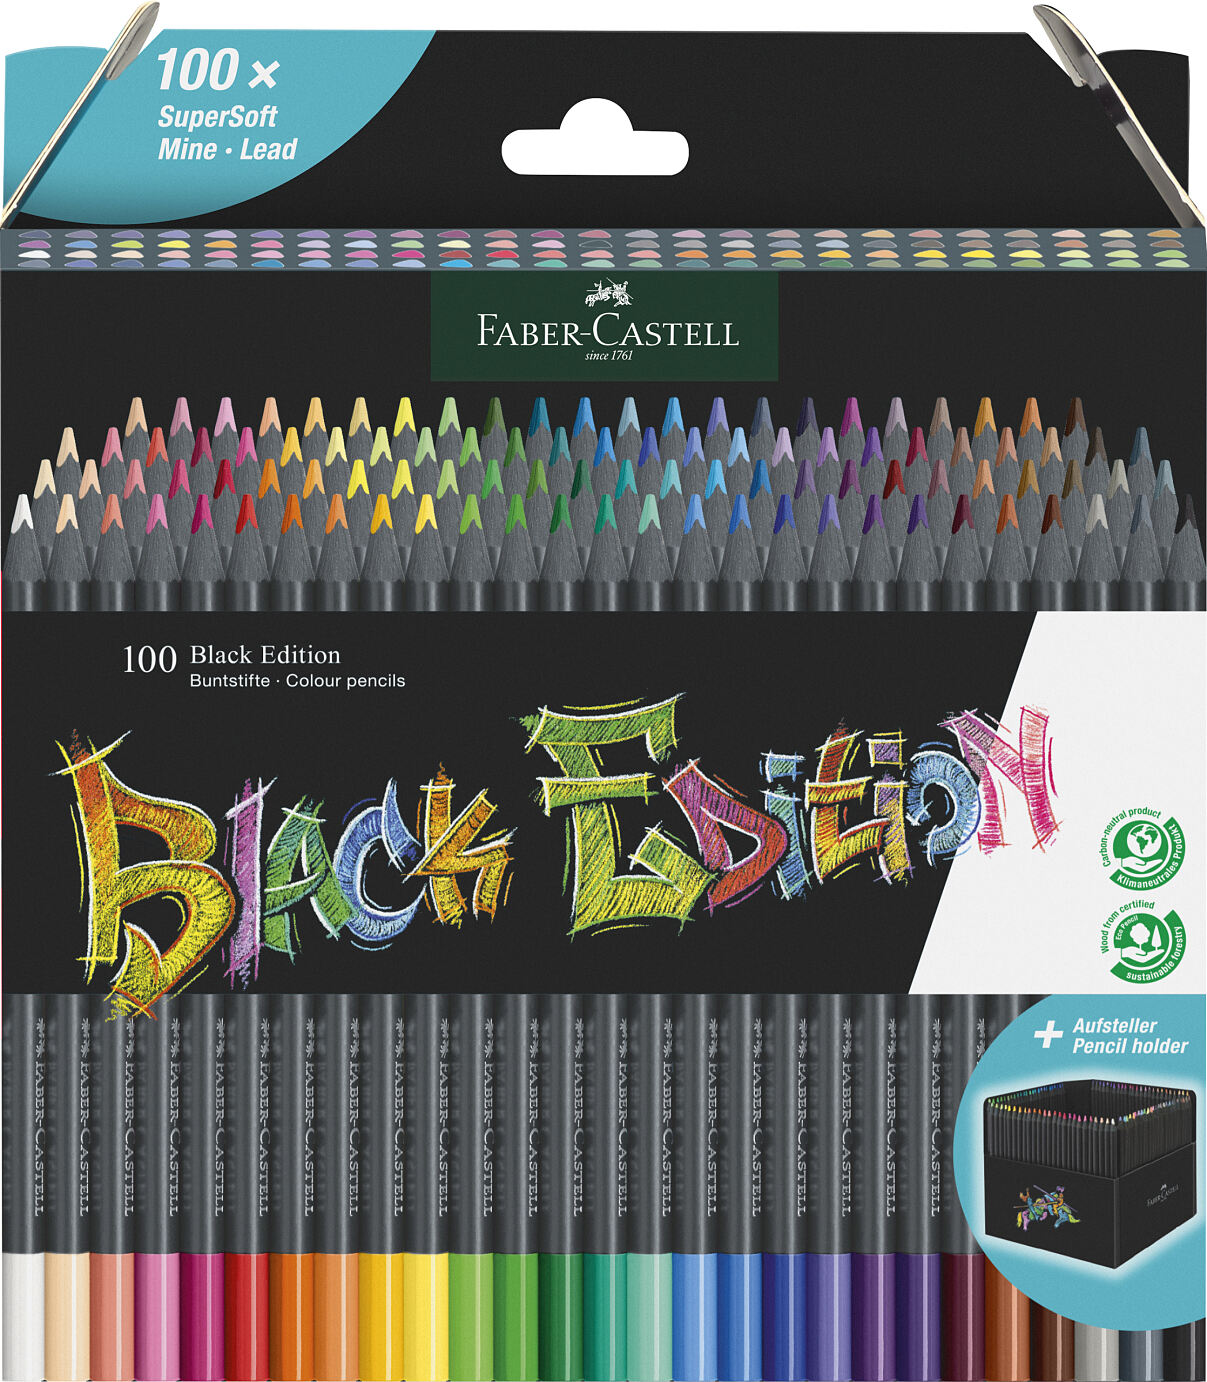 Faber-Castell_Col. pencils Black Edition 100er_EUR 55,00 (1)